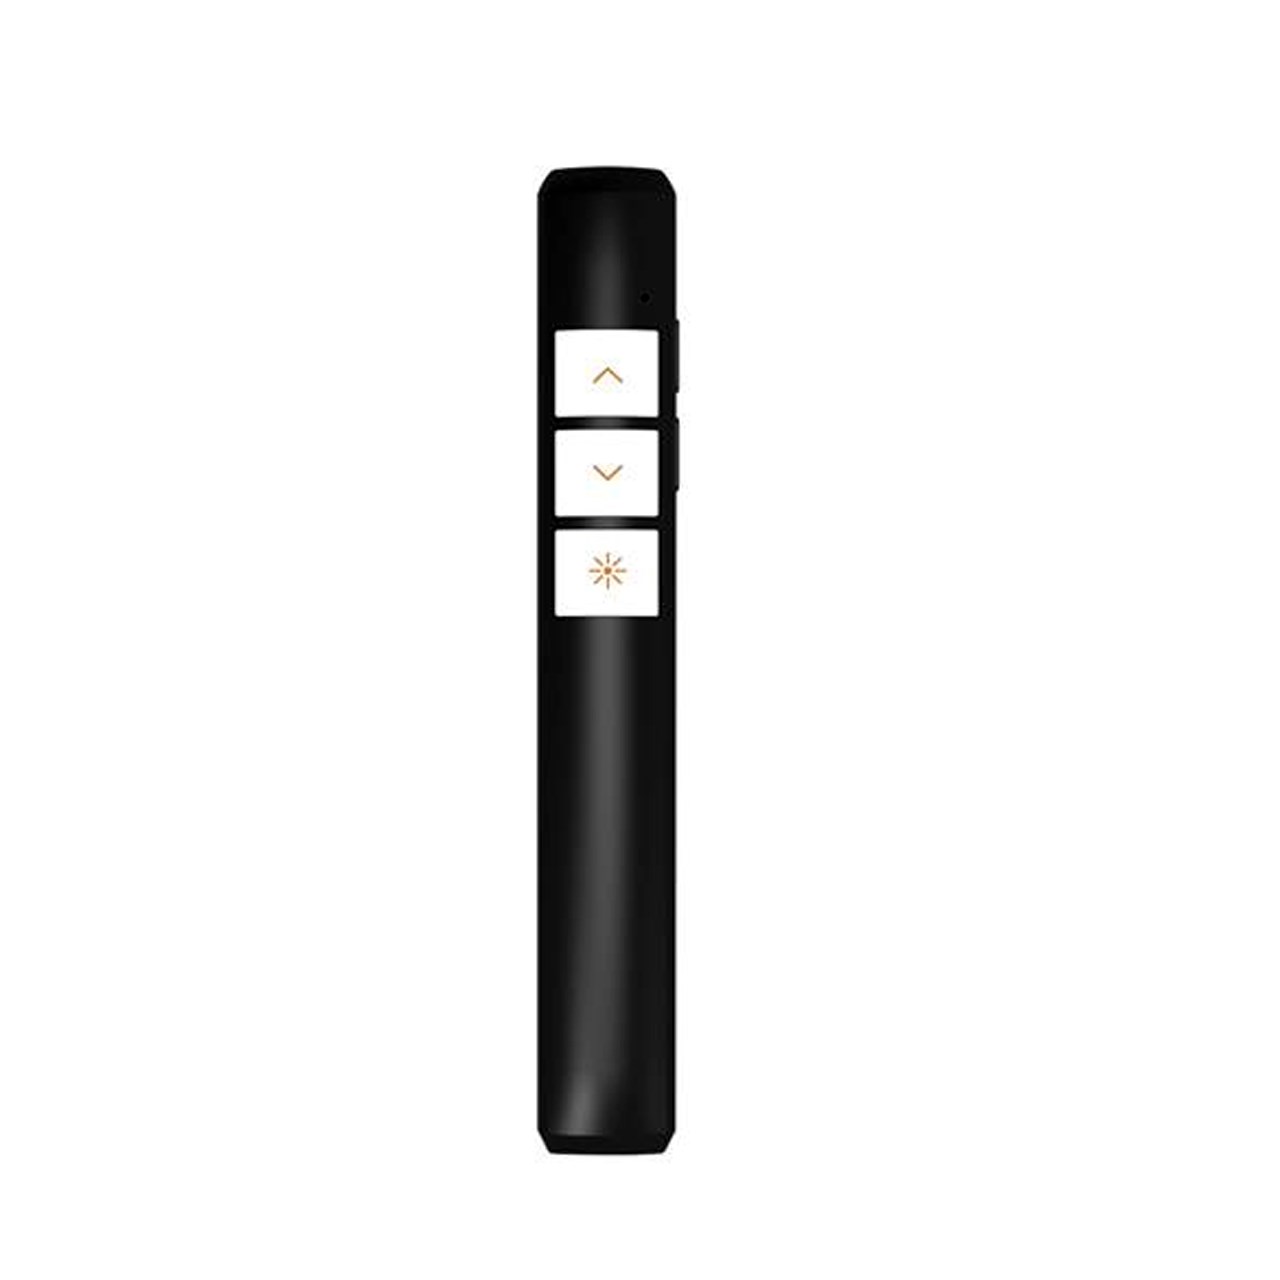 قلم پاورپوینت - پرزنتر بی سیم مدل PP-932 با باطری داخلی و پشتیبانی از 9 عمل کاربردی ارایه نمایشی